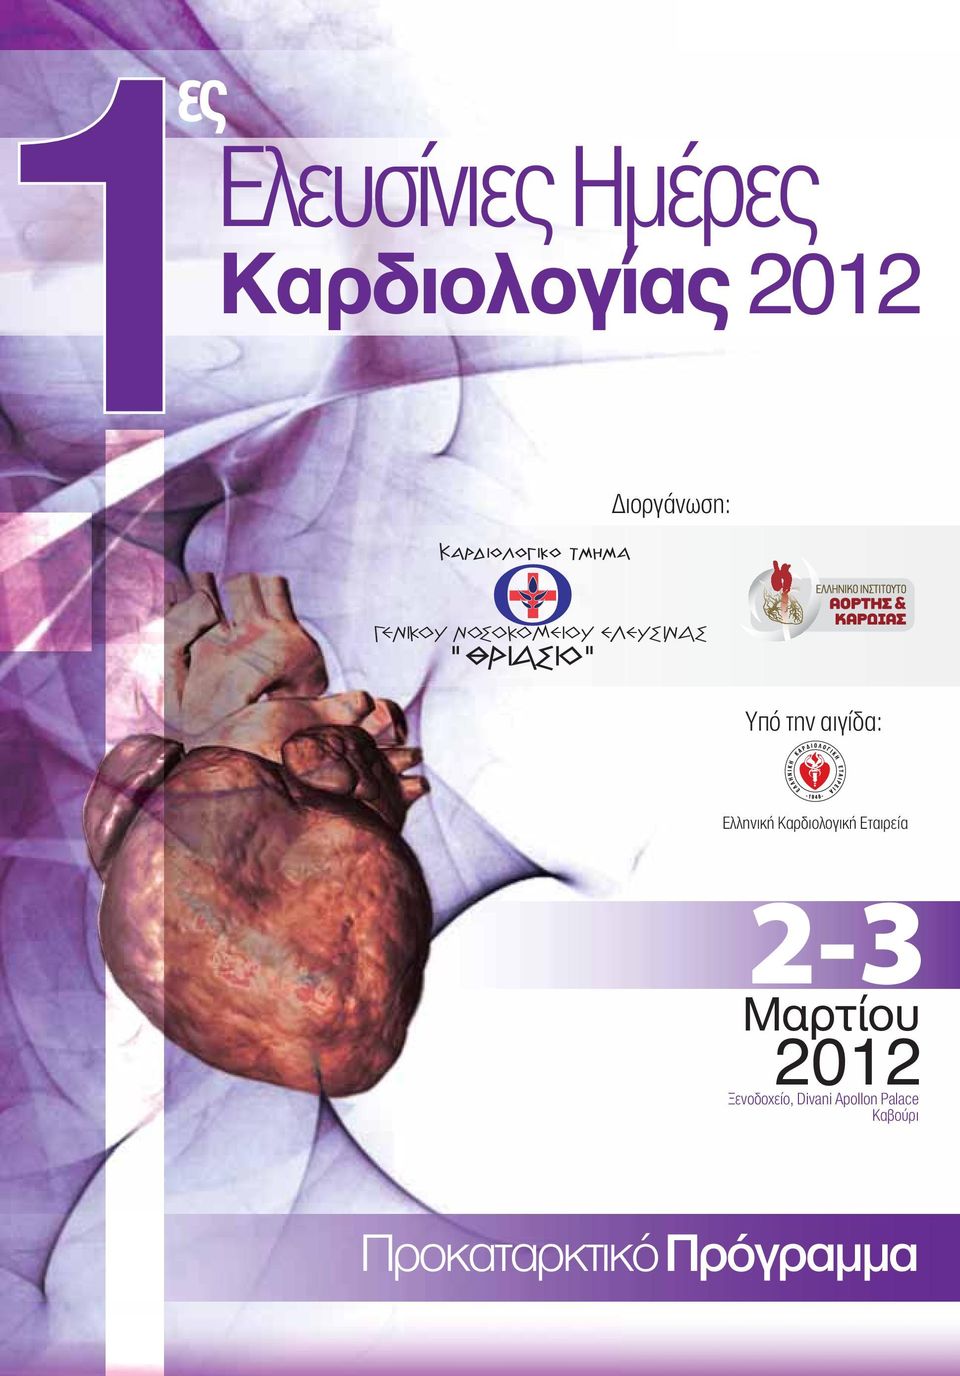 αιγίδα: Ελληνική Καρδιολογική Εταιρεία 2-3 Μαρτίου 2012